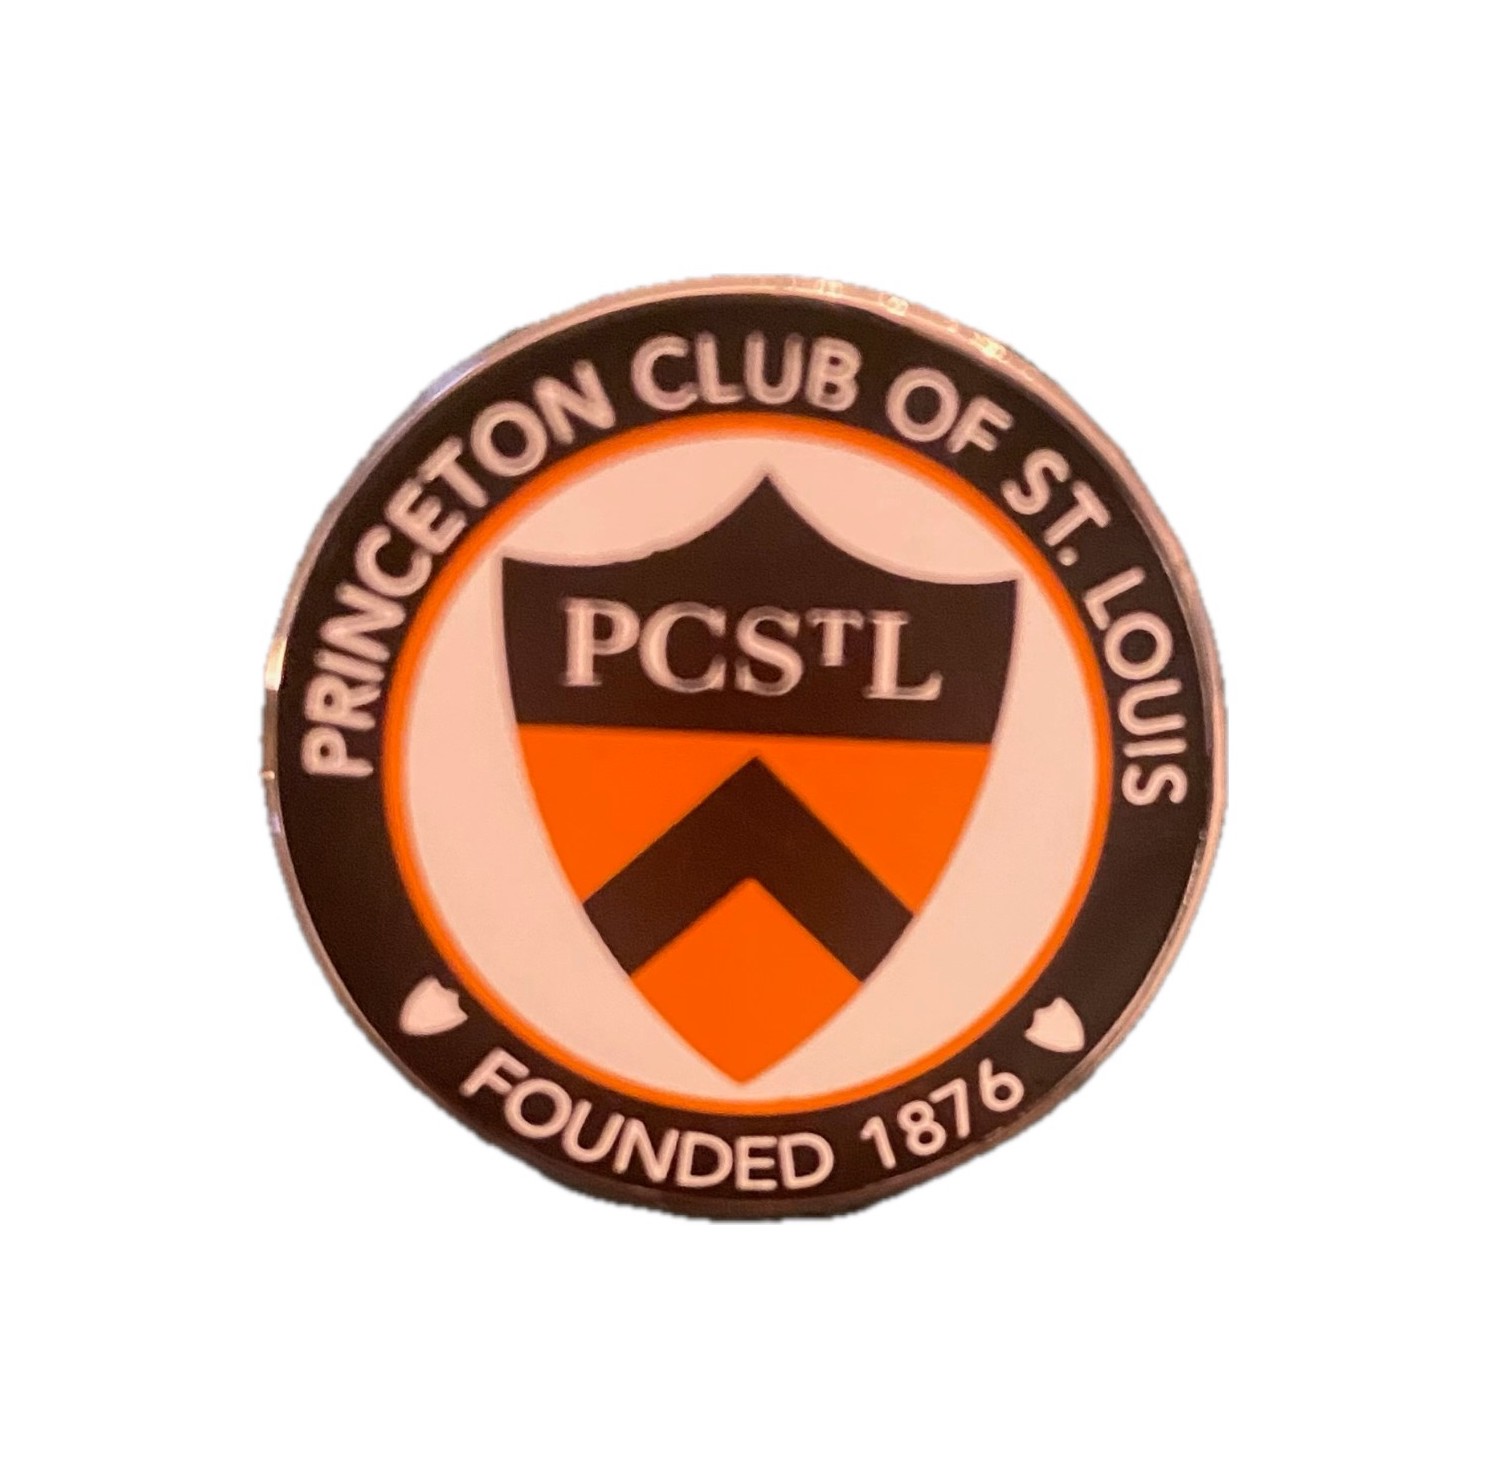 Princeton Club of St Louis (PCSL) Pin